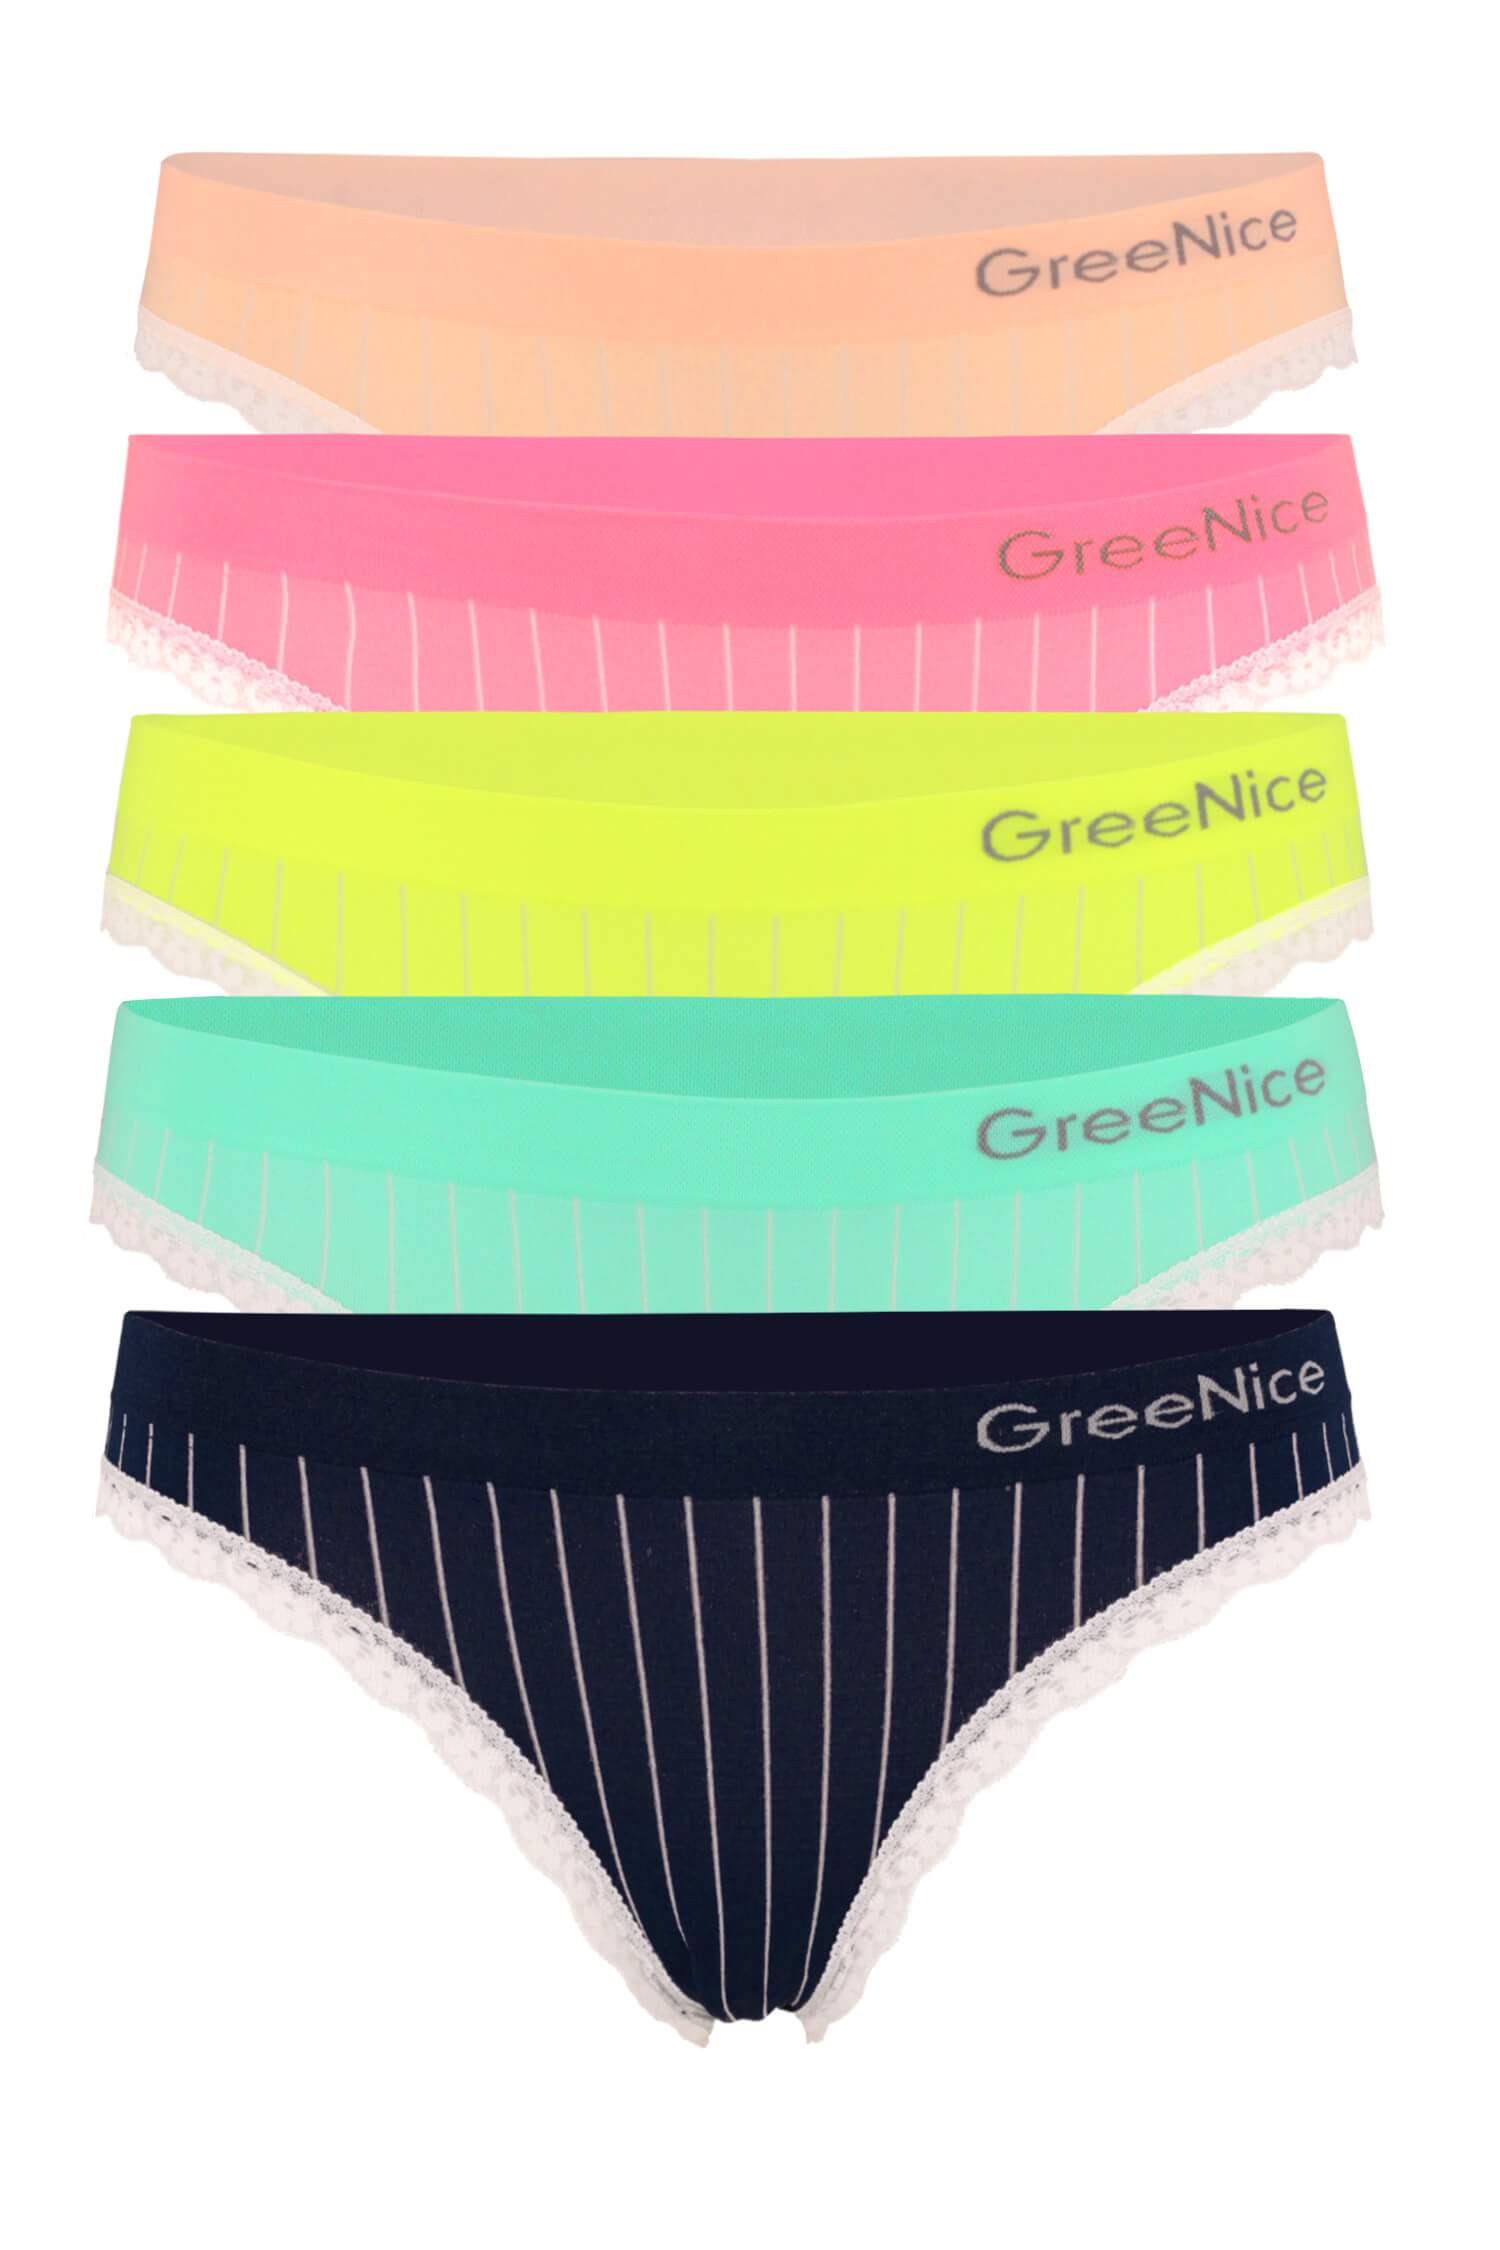 Azzy Greenice bikini sada 3 kusů kalhotek L vícebarevná